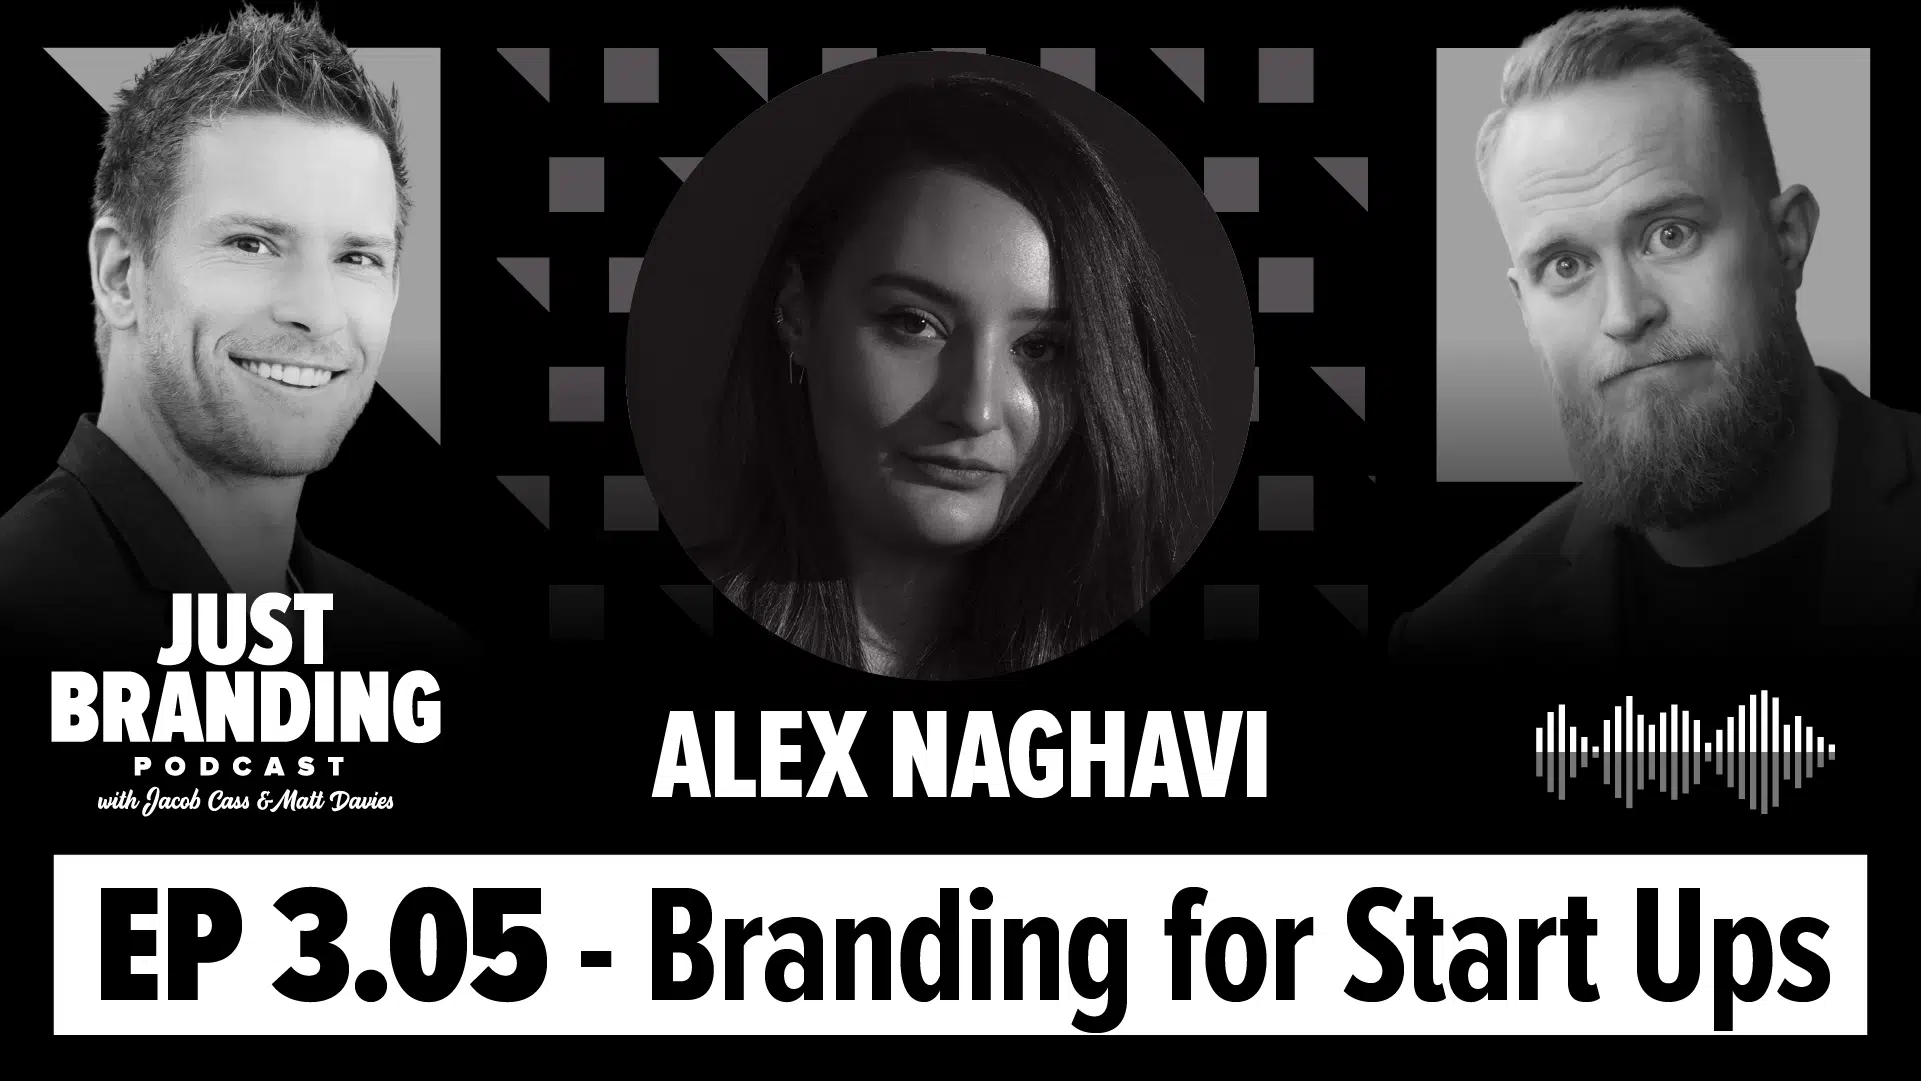 Branding for Start Ups with Alex Naghavi